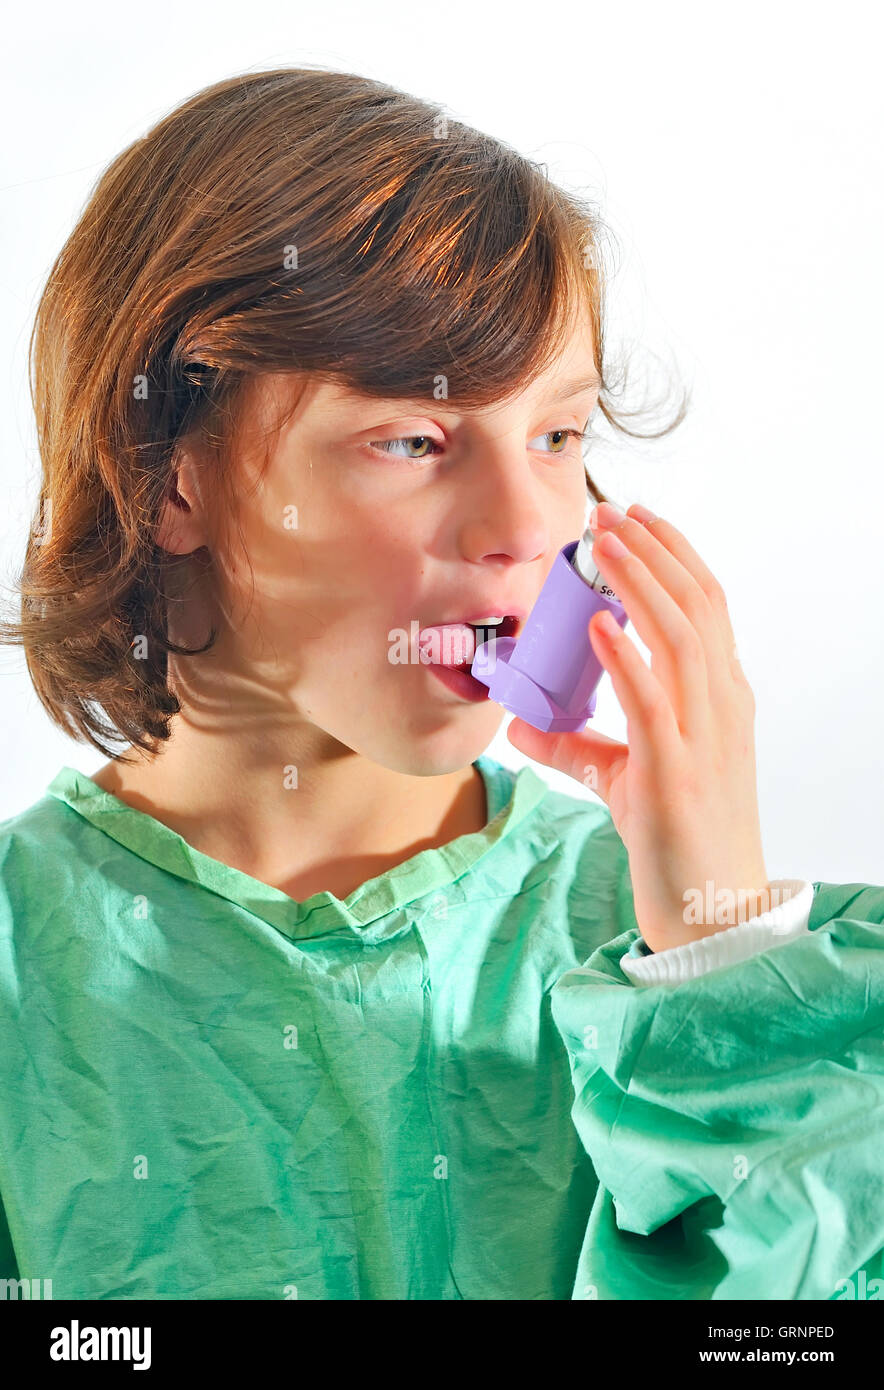 little girl using inhaler Stock Photo